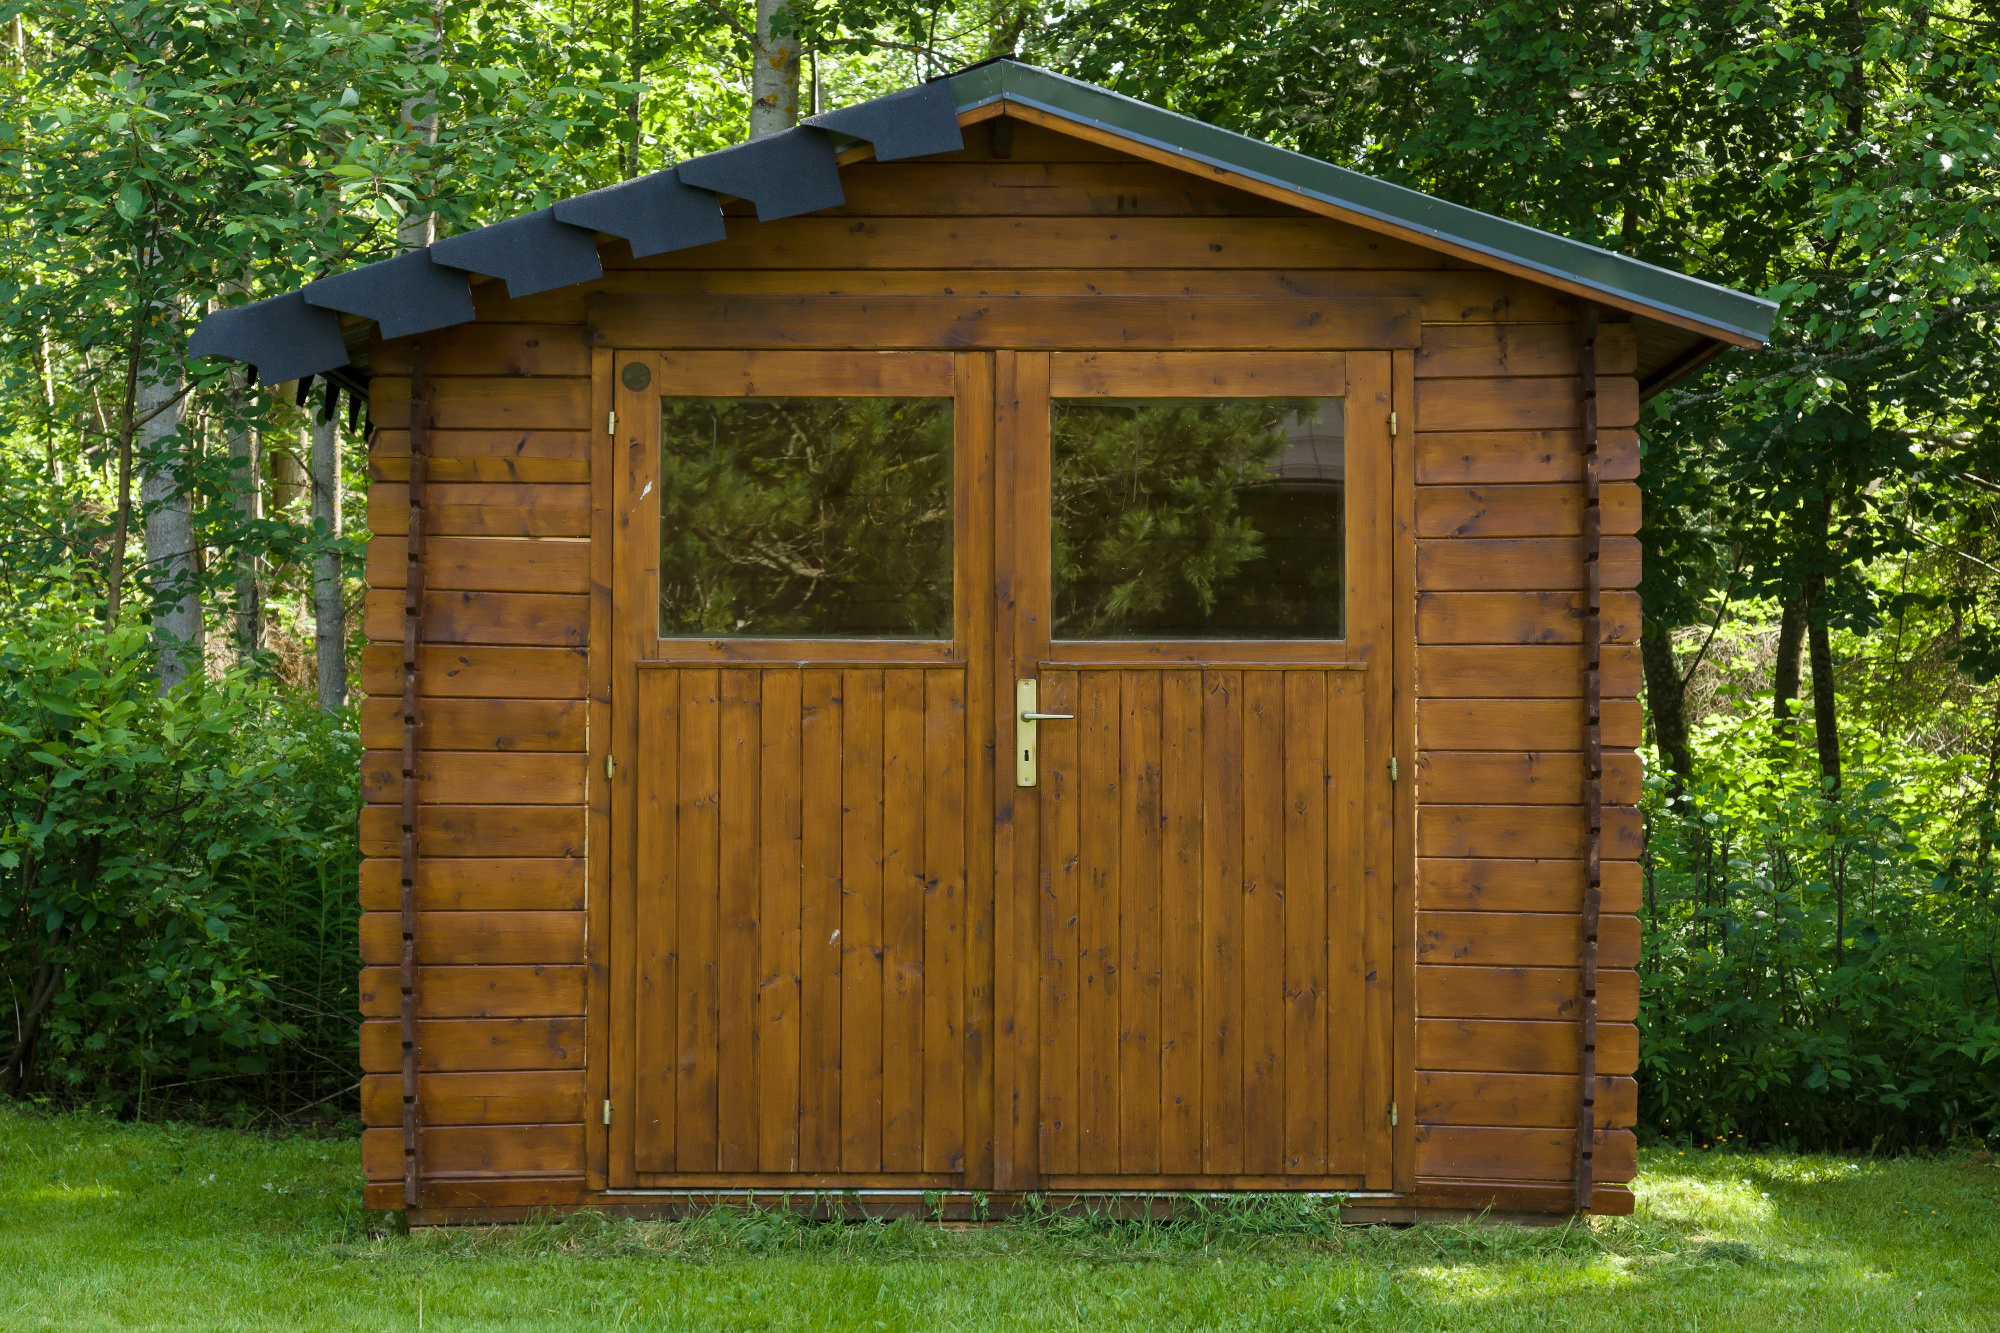 Lesena hiška je lahko idealna rešitev za vikend pobeg